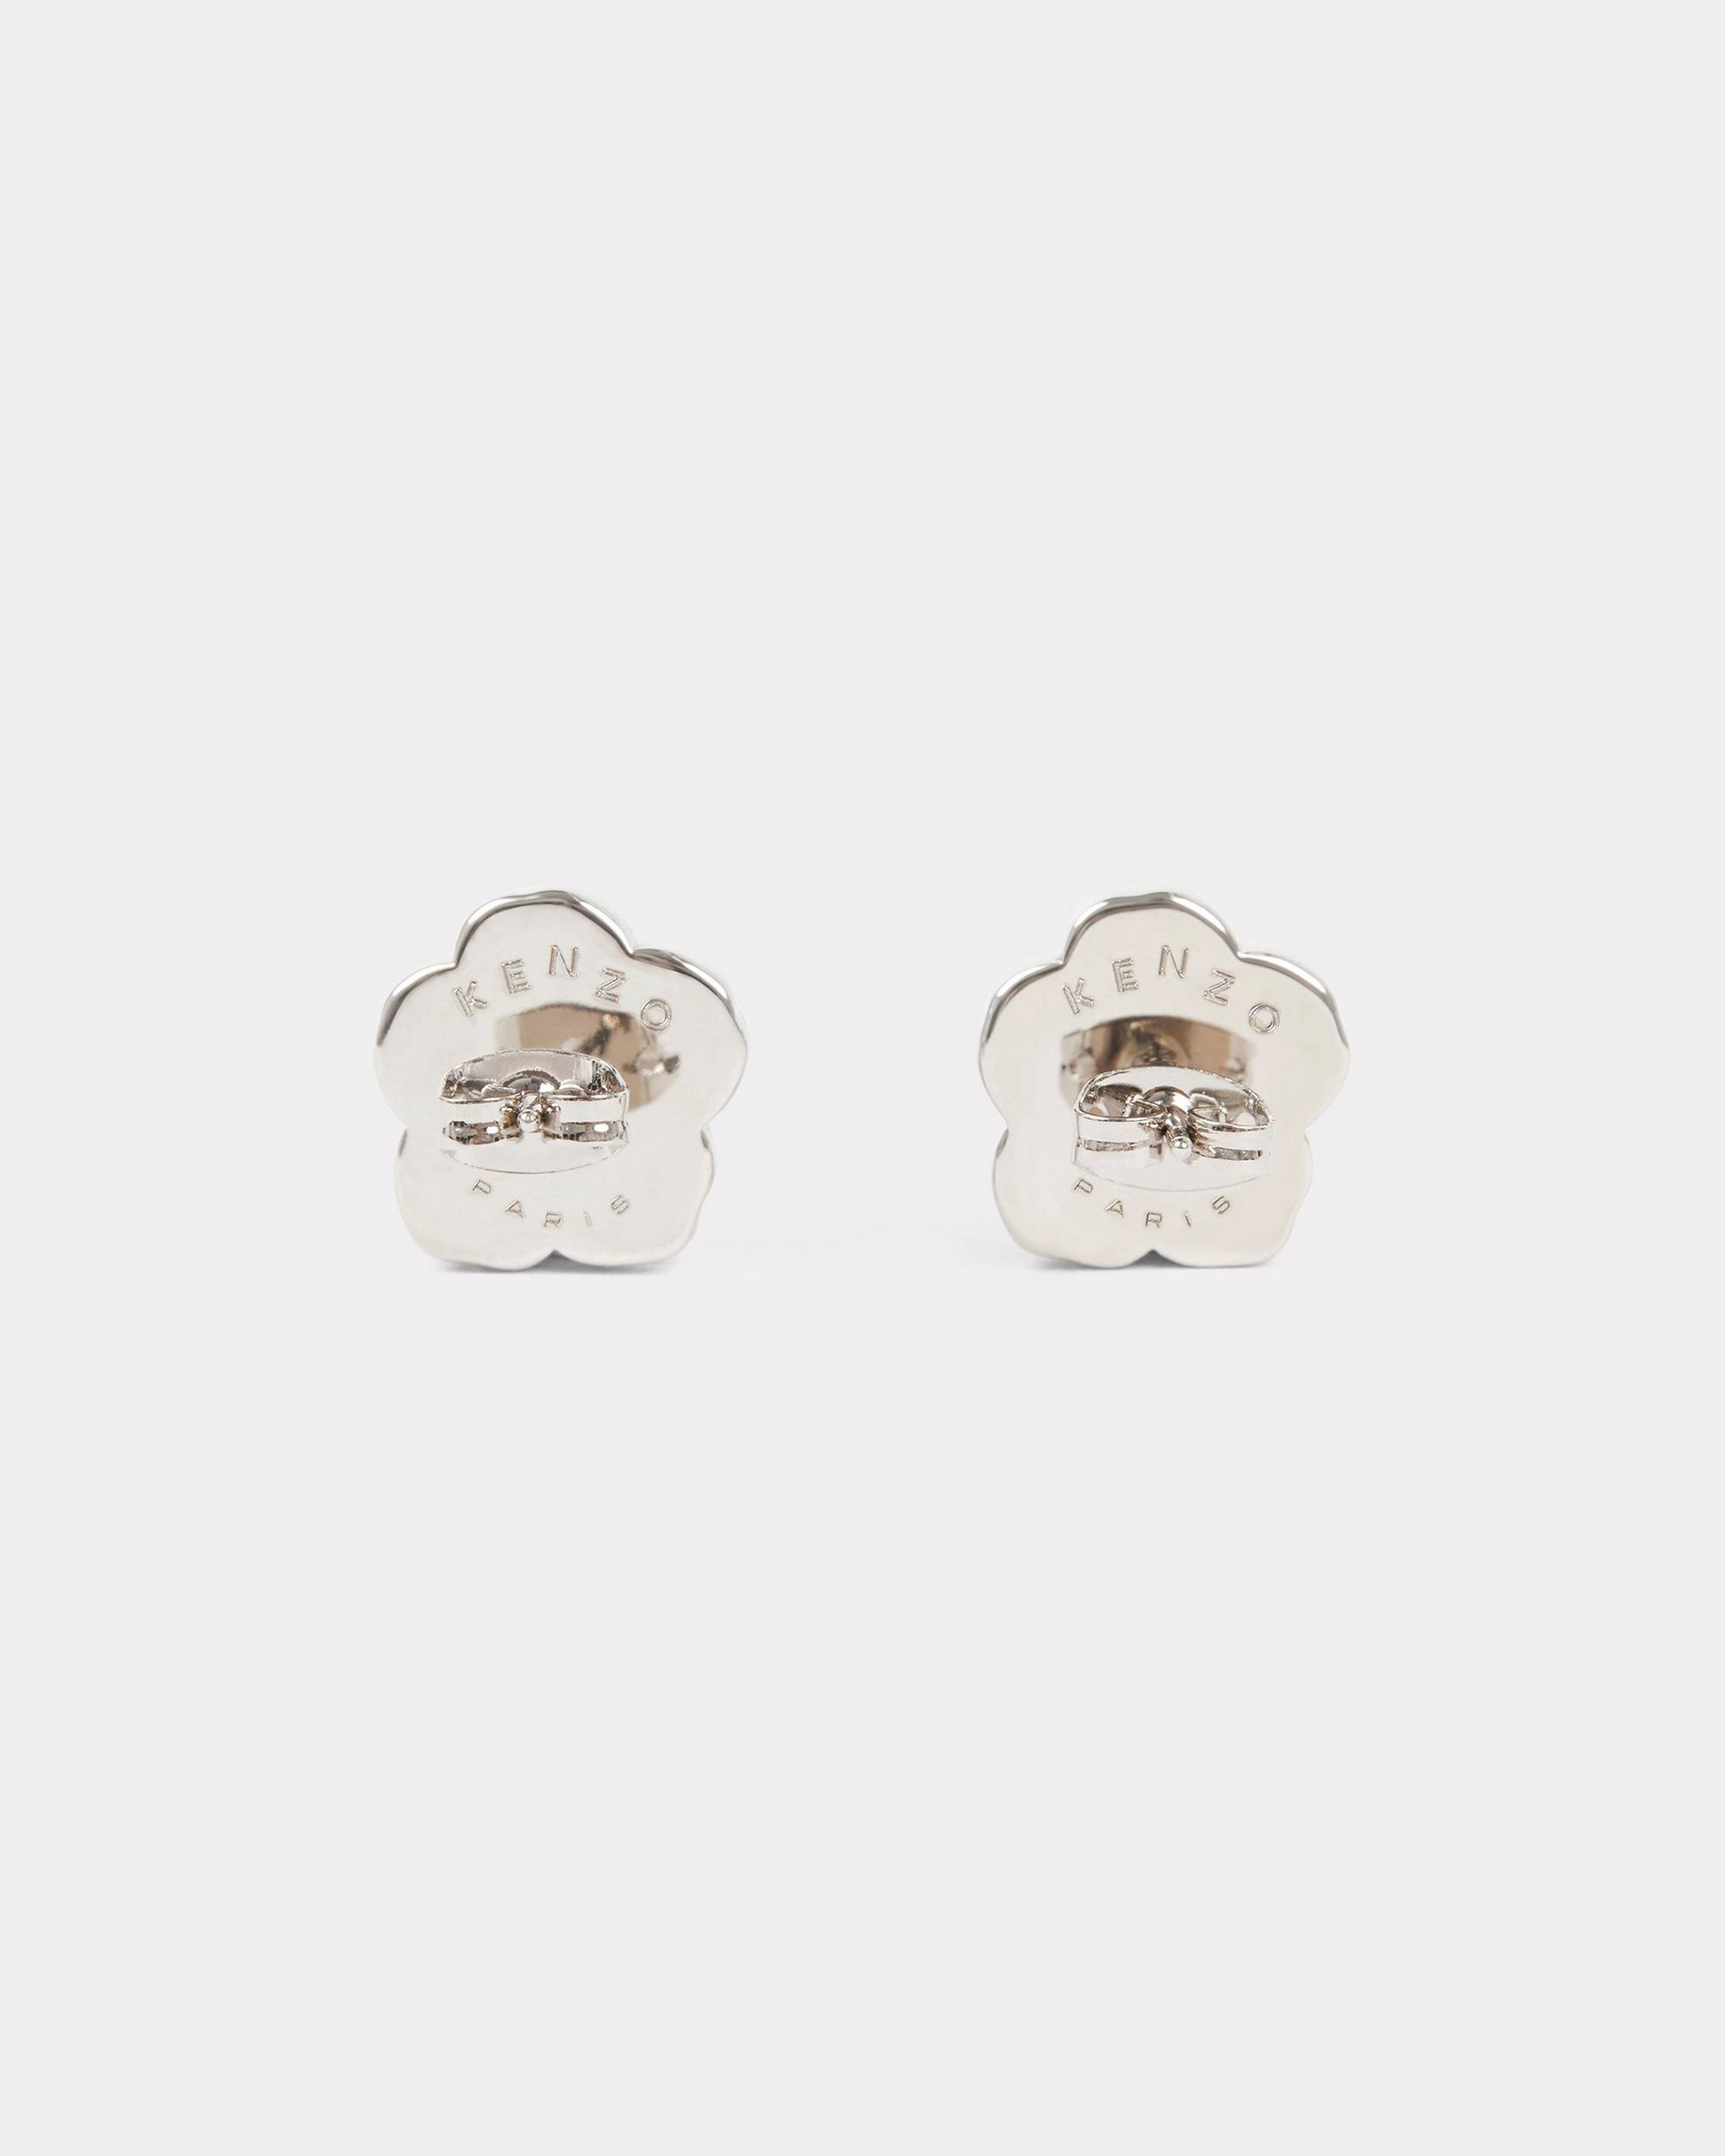 'KENZO Crest' earrings - 3